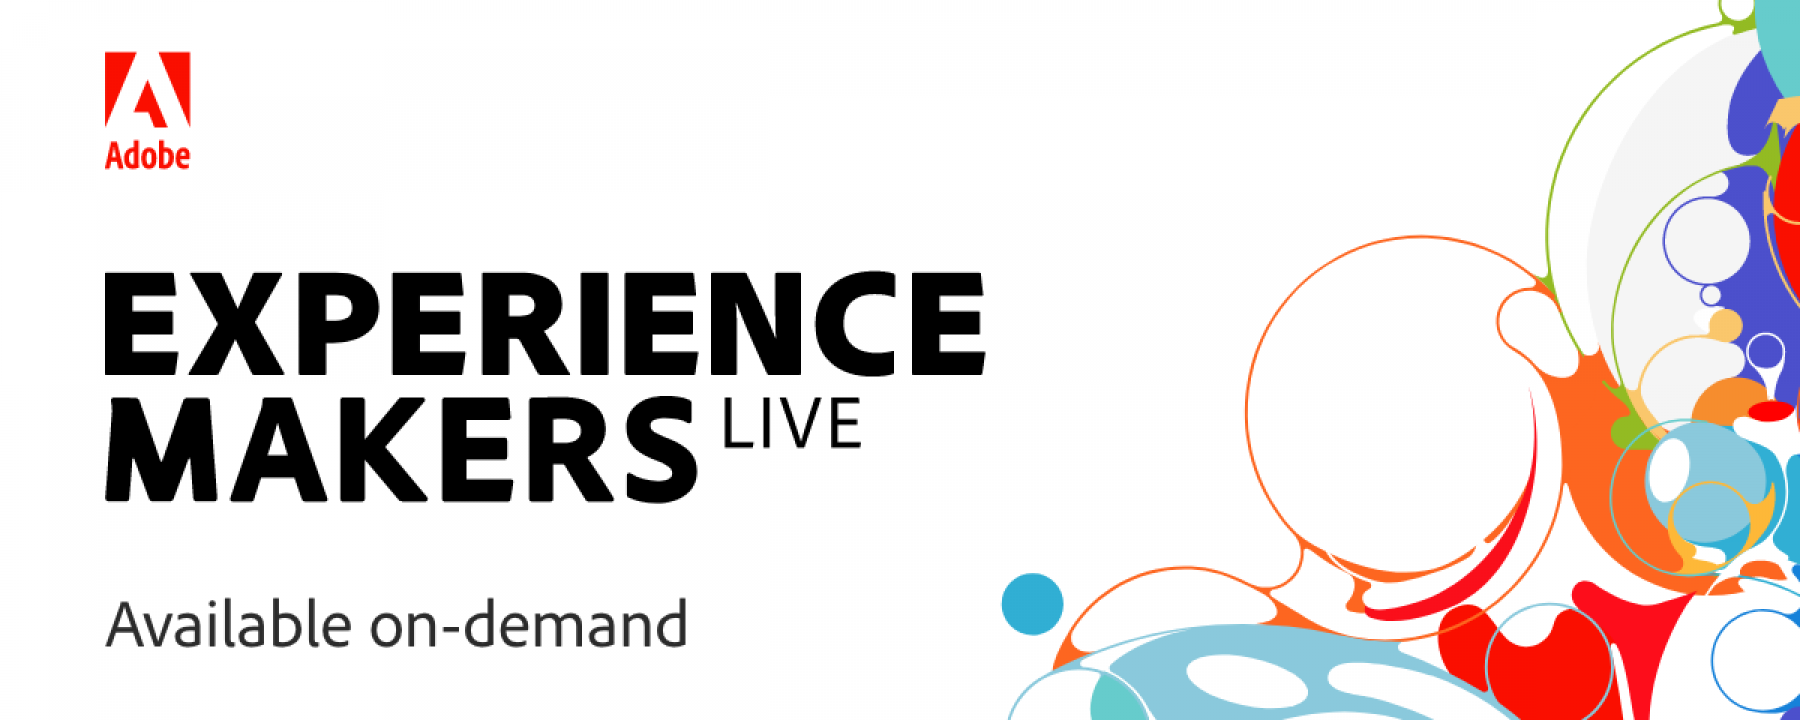 Experience Makers Live à la Carte, un événement organisé par Adobe du 26 au 29 janvier 2021